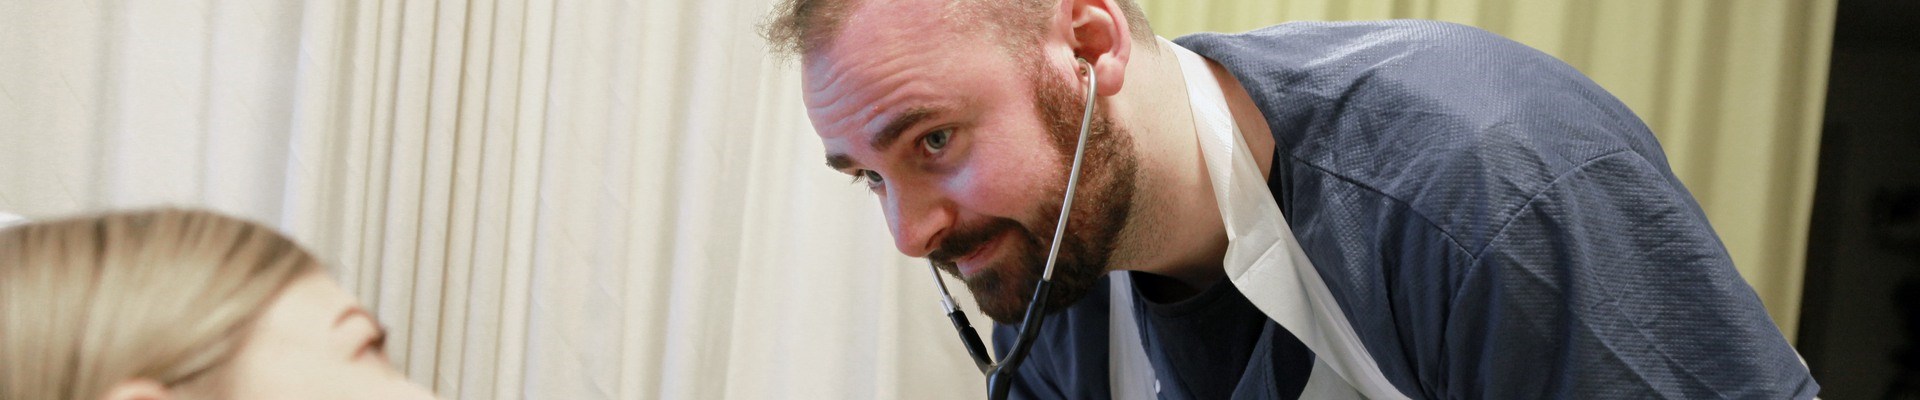 En sjuksköterskestudent lyssnar i ett stetoskop